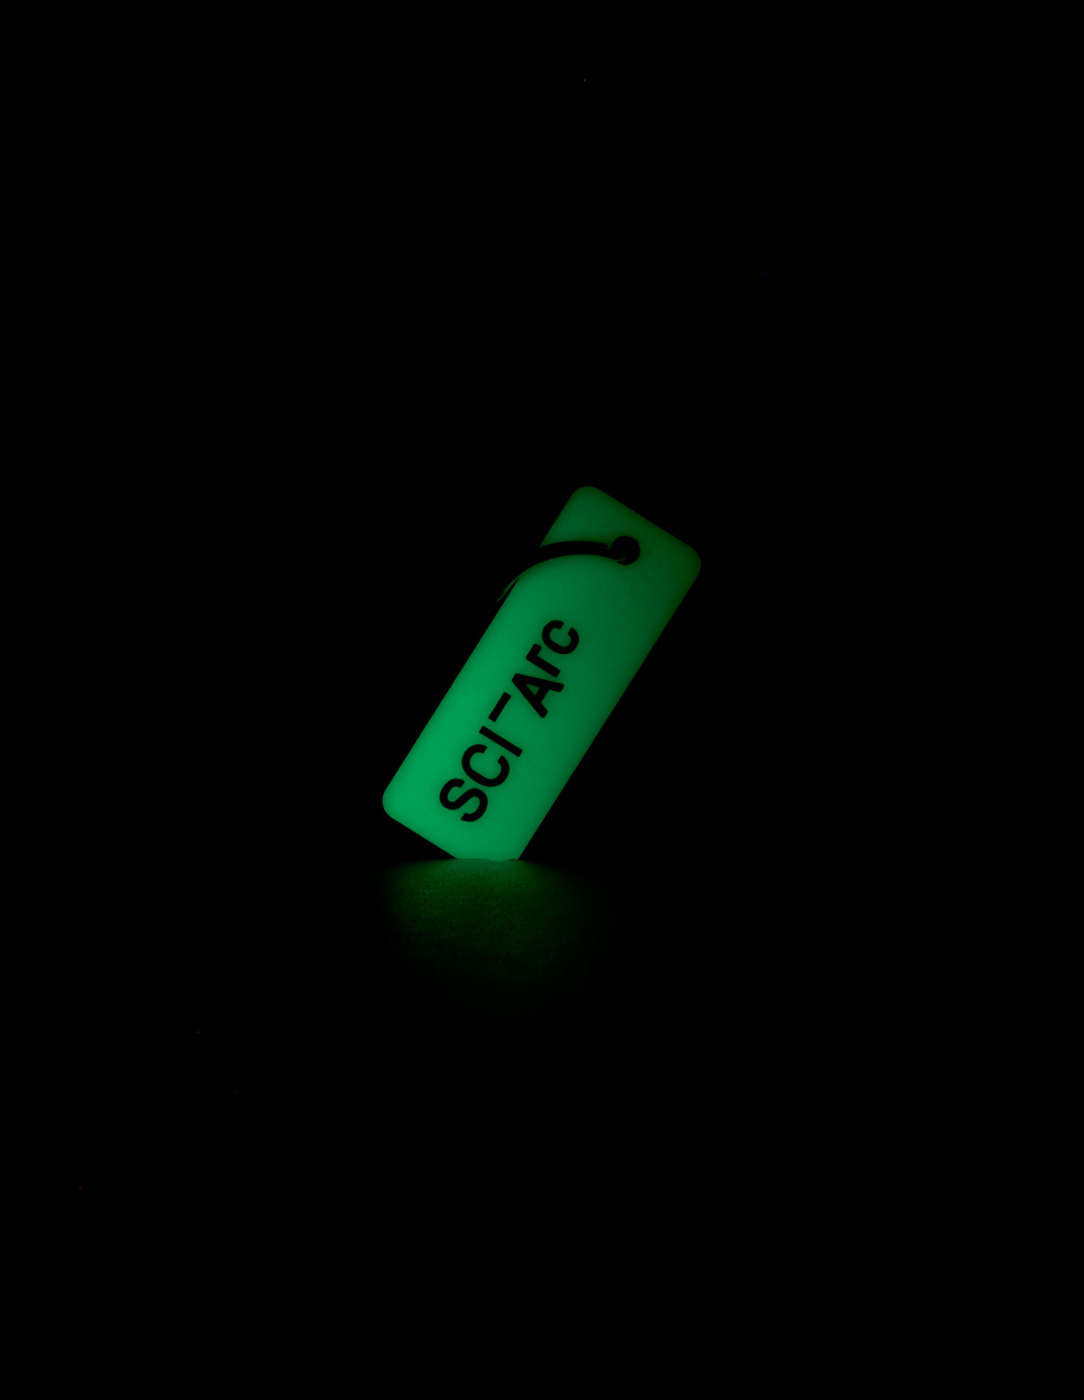 sciarc logo glow keychain